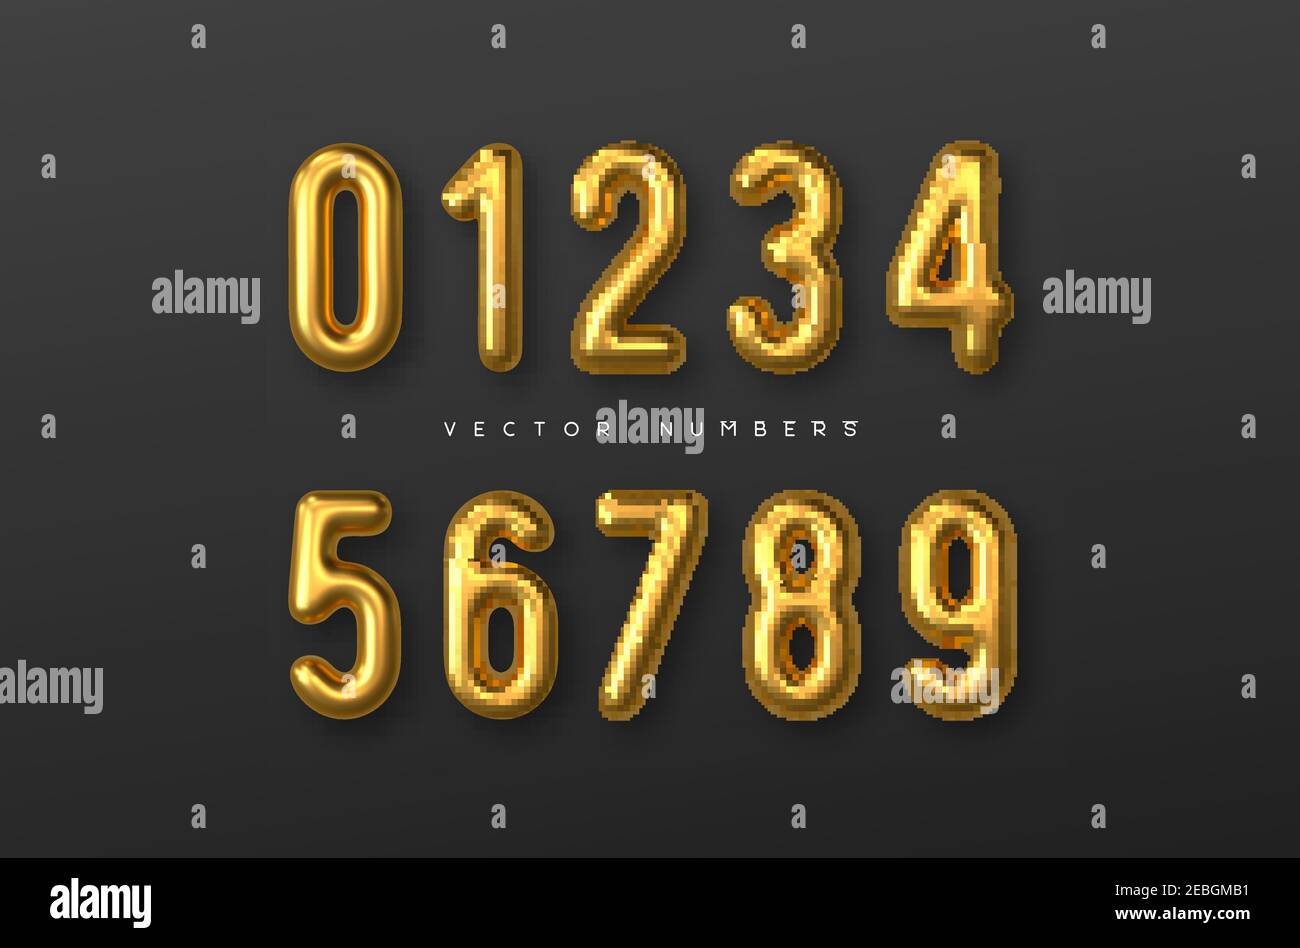 Golden numbers vector set. Stock Vector